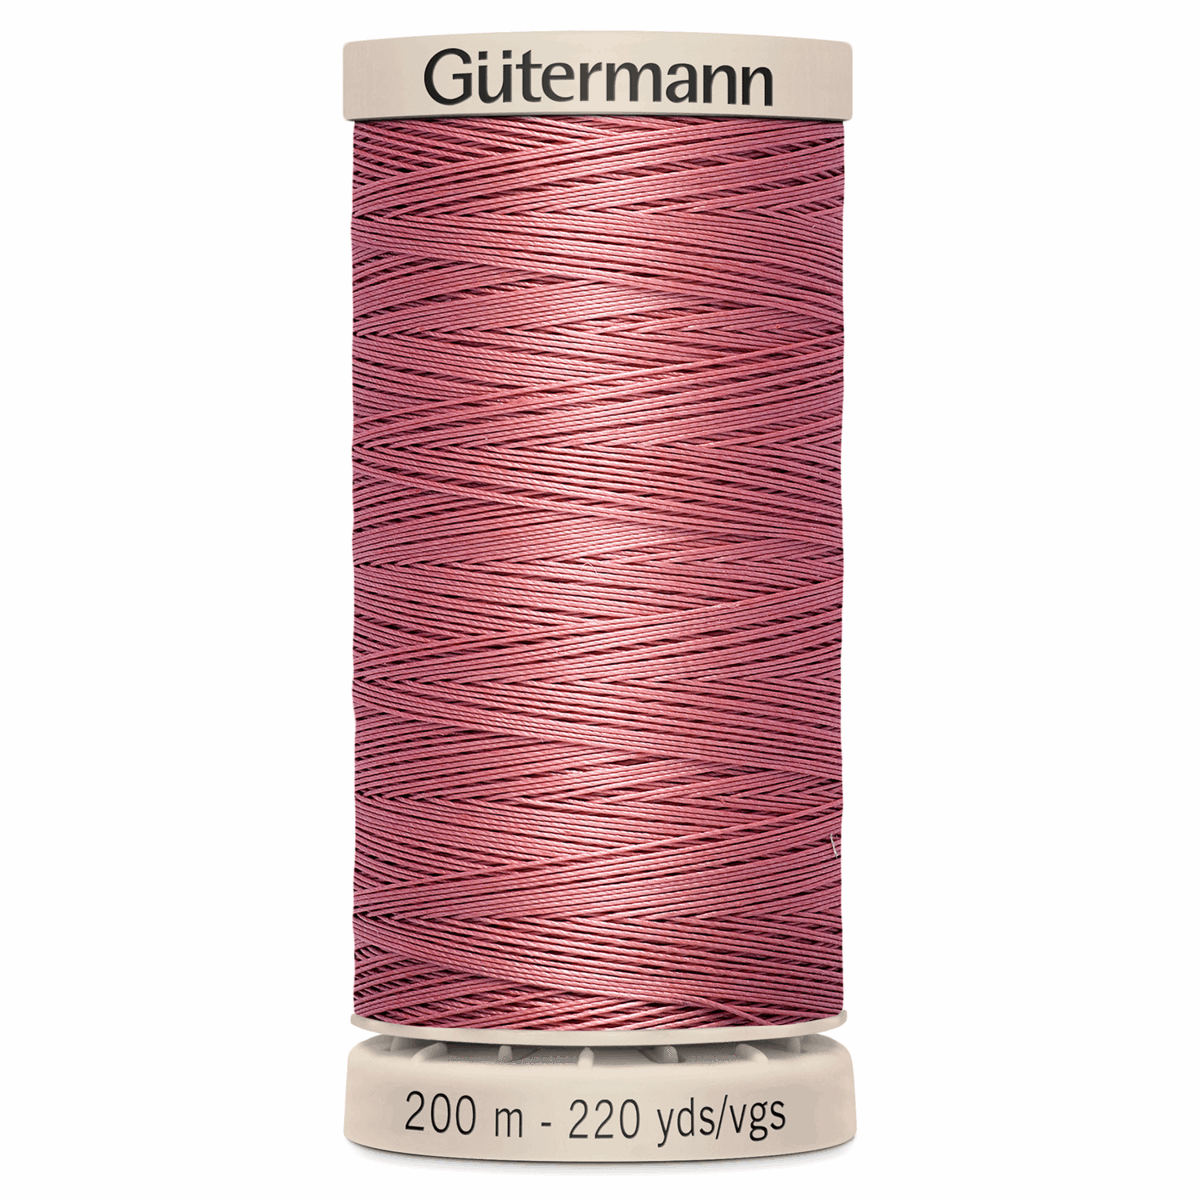 Gutermann Quilting Thread 200m - Colour 2346